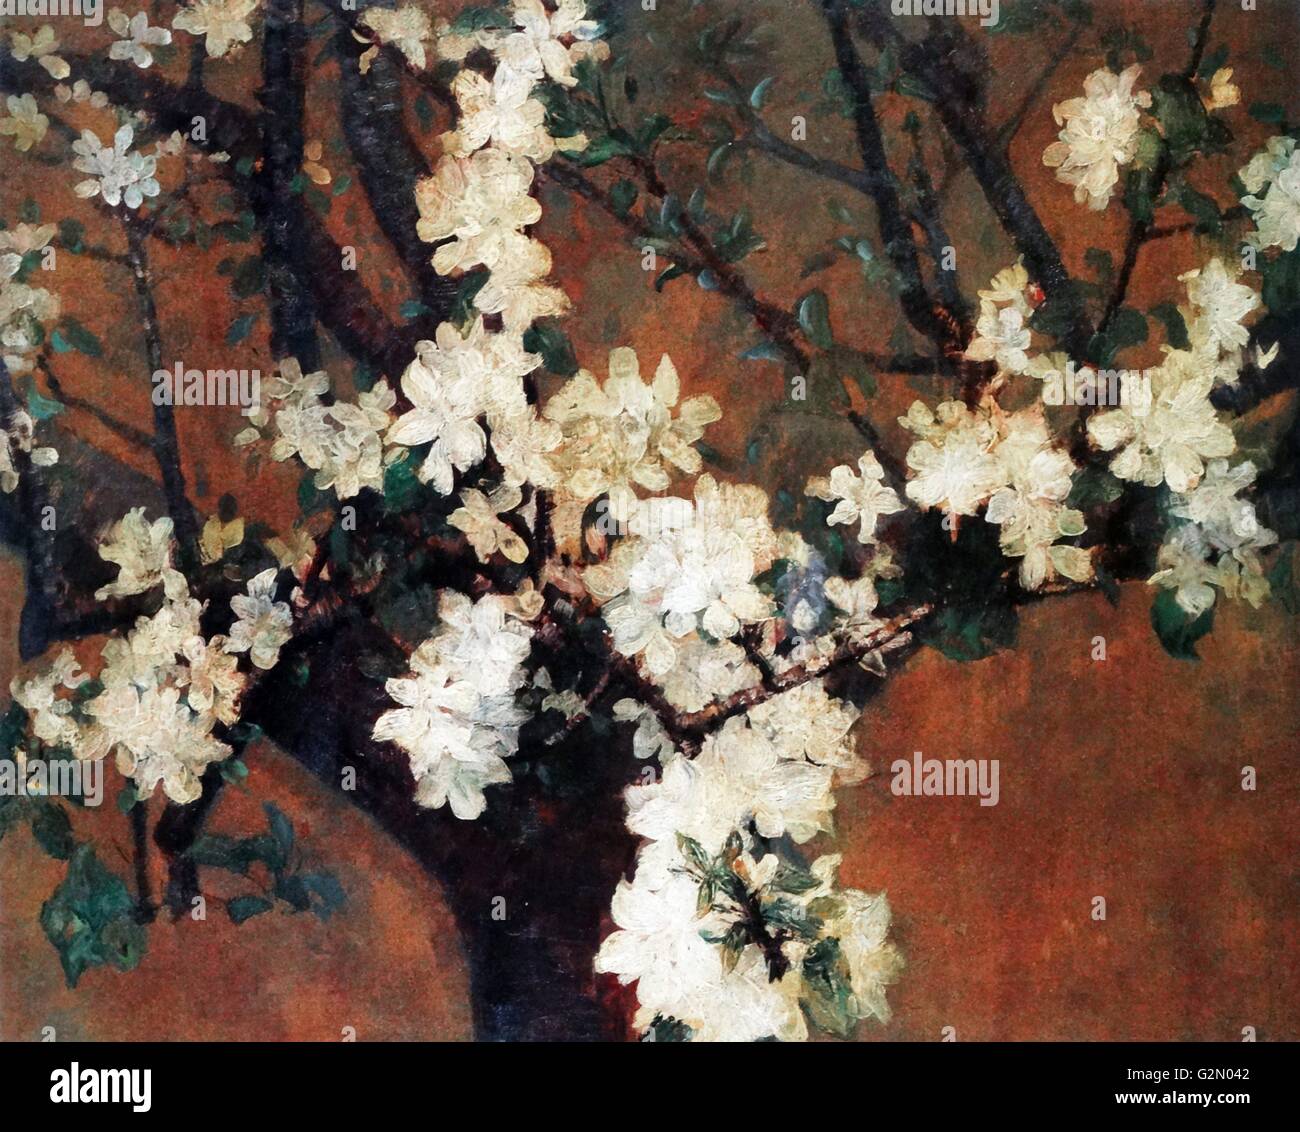 Öl auf Leinwand Gemälde von der australischen Künstler John Peter Russell (16. Juni 1858 bis 22. April 1930) mit dem Titel "Almond Tree in der Blüte'. Im Jahr 1887 abgeschlossen Stockfoto